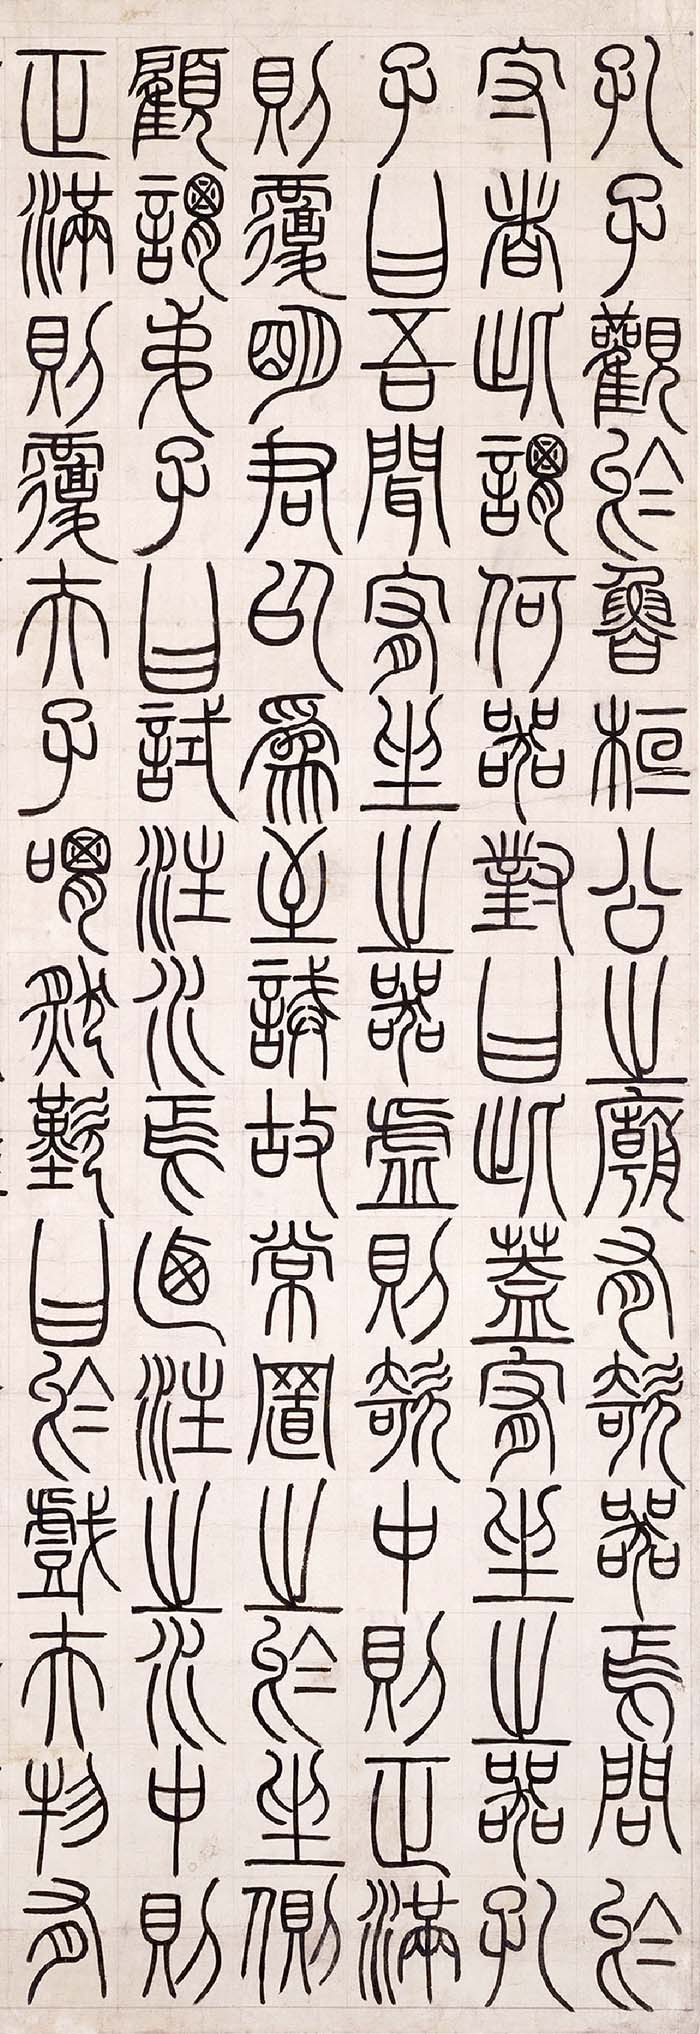 邓石如《篆书荀子宥坐》轴-北京故宫博物院藏(图2)